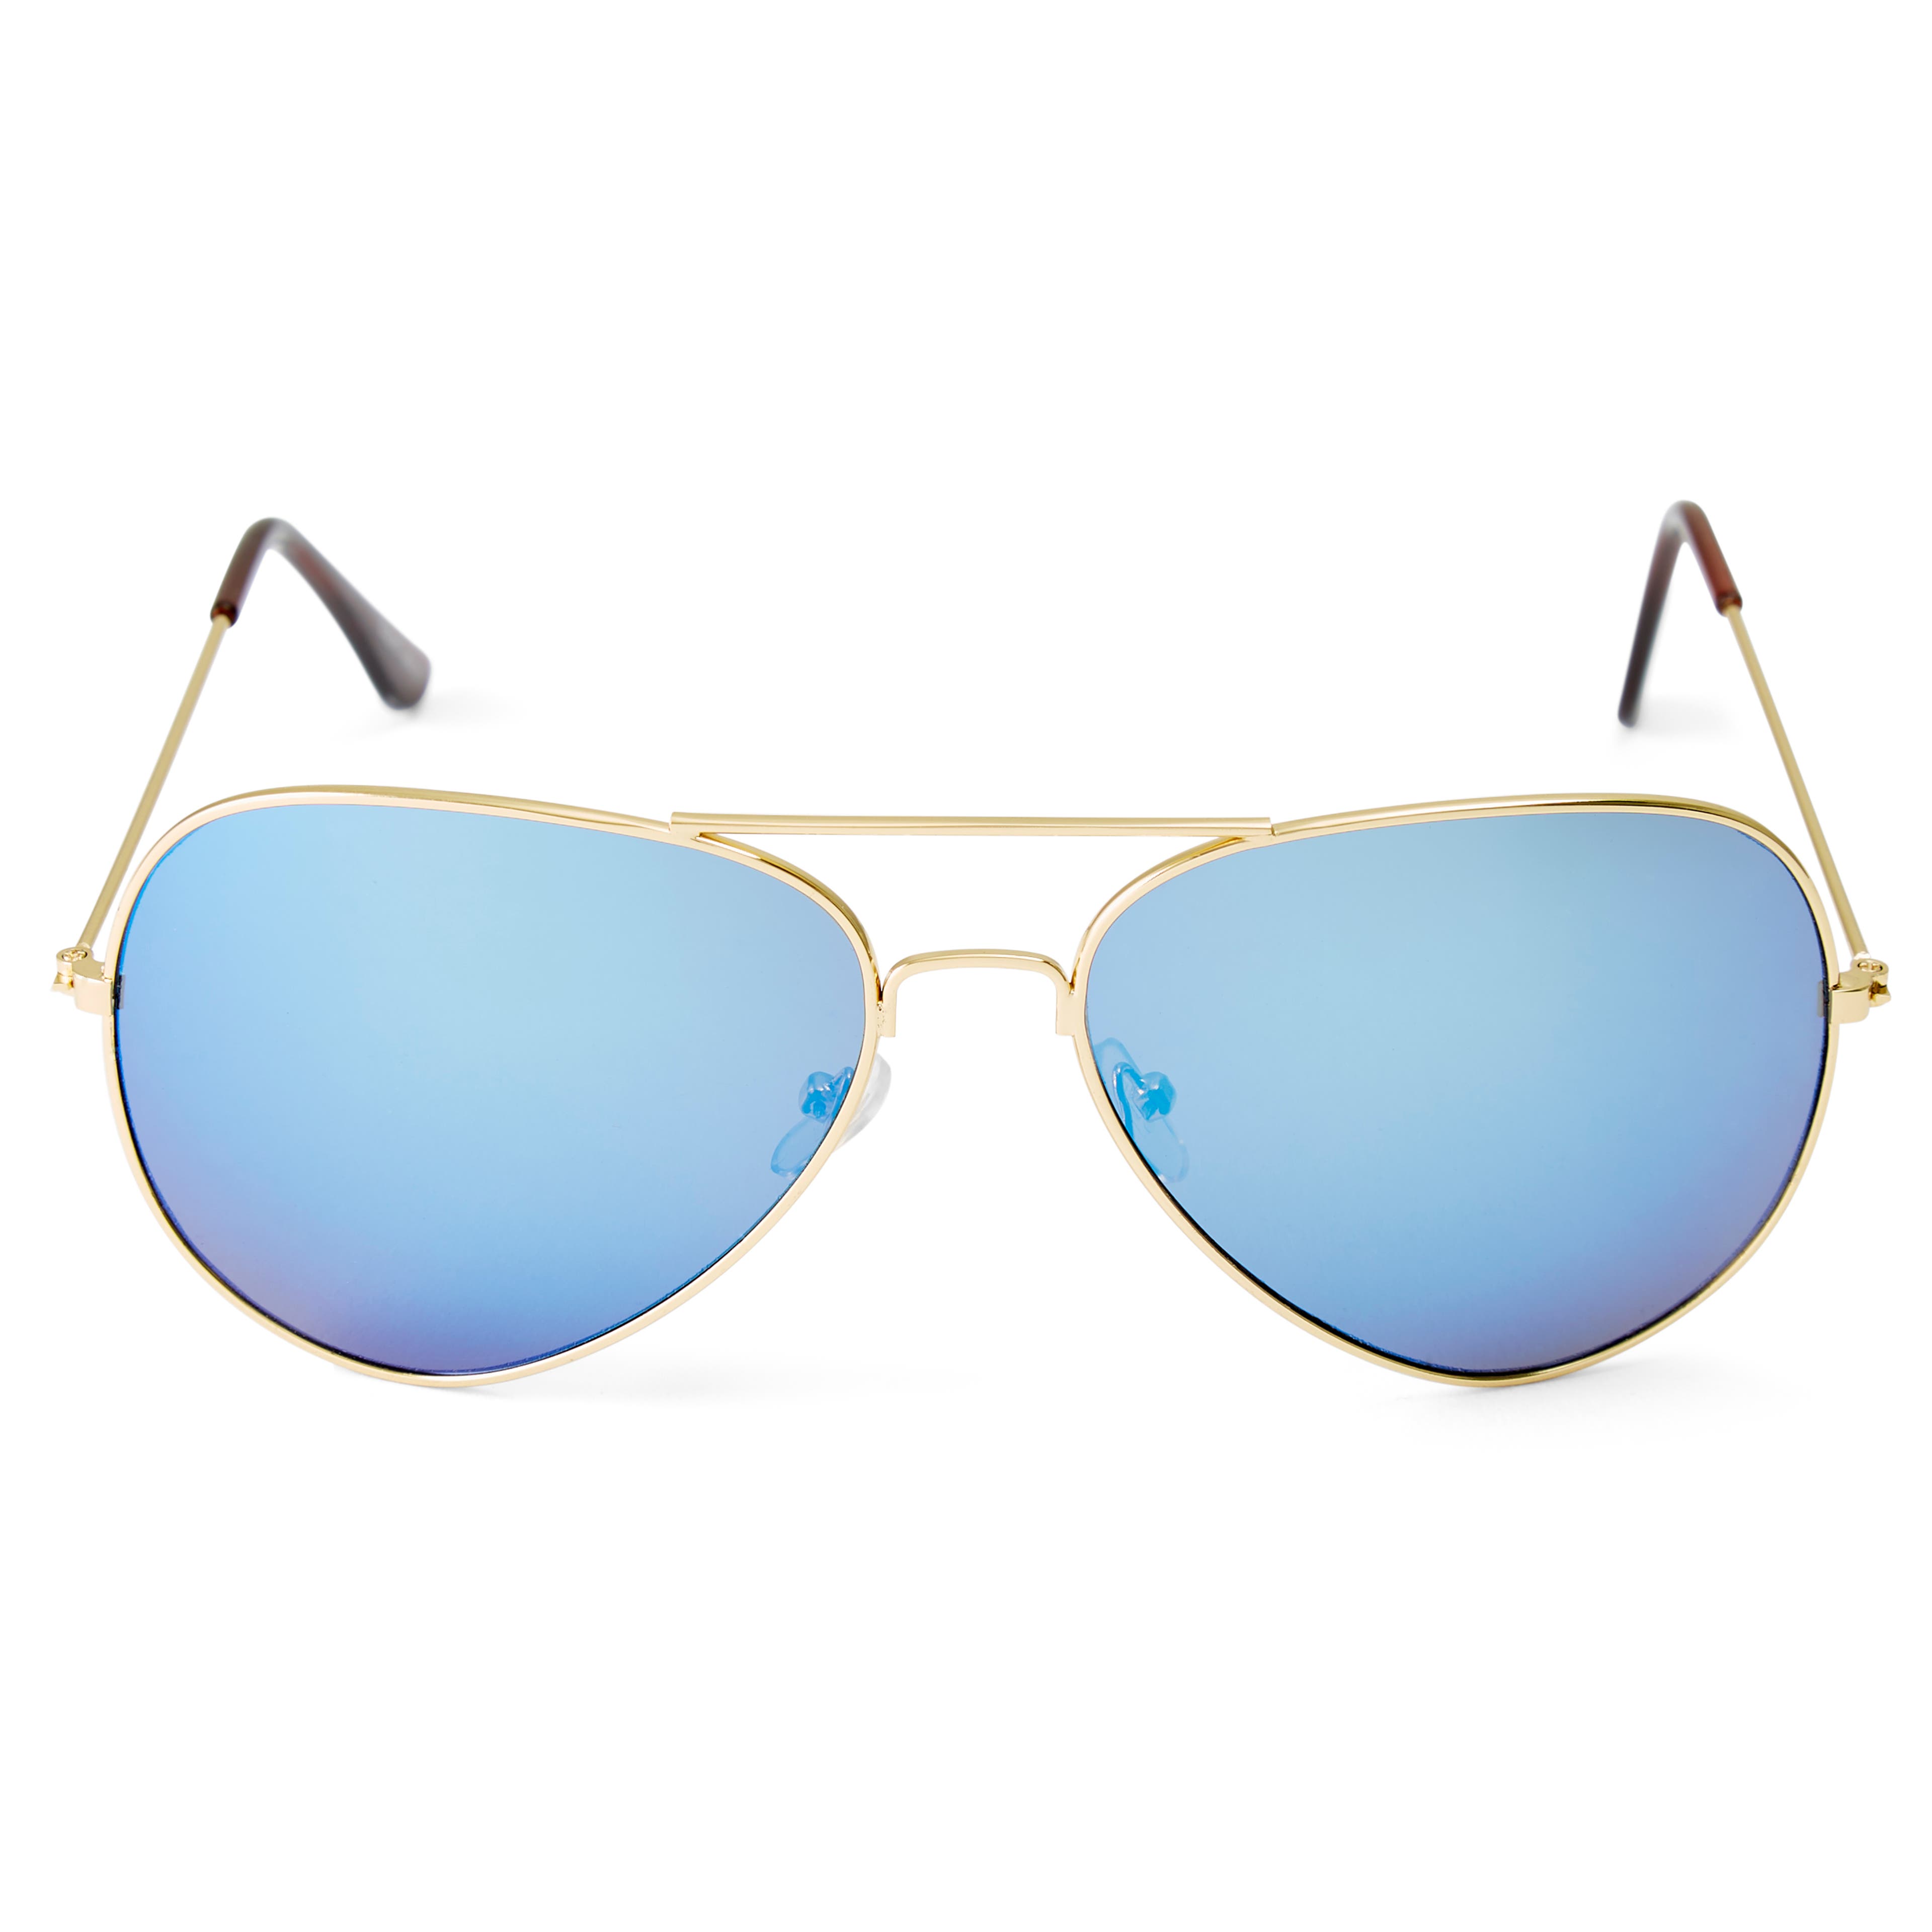 Slnečné okuliare Aviator v zlatých a modrých tónoch